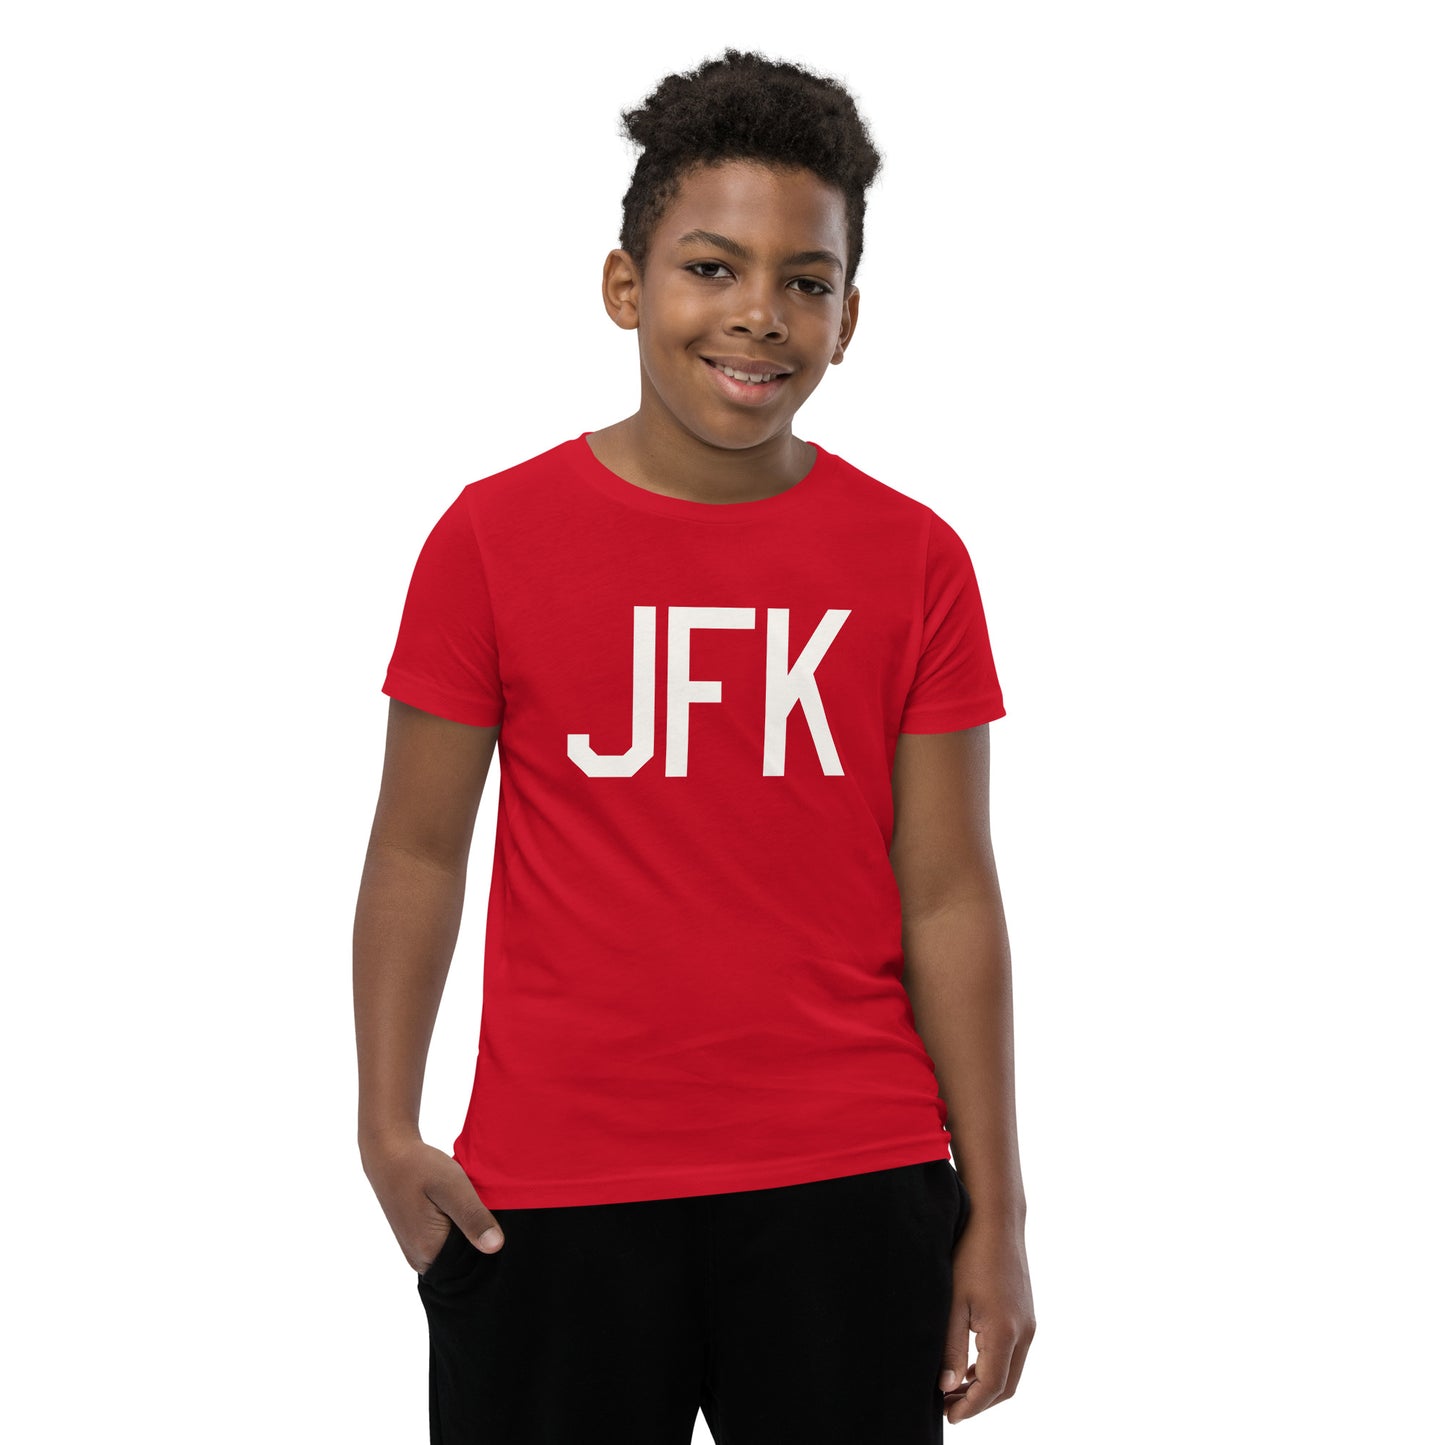 Kid's T-Shirt - White Graphic • JFK New York • YHM Designs - Image 09